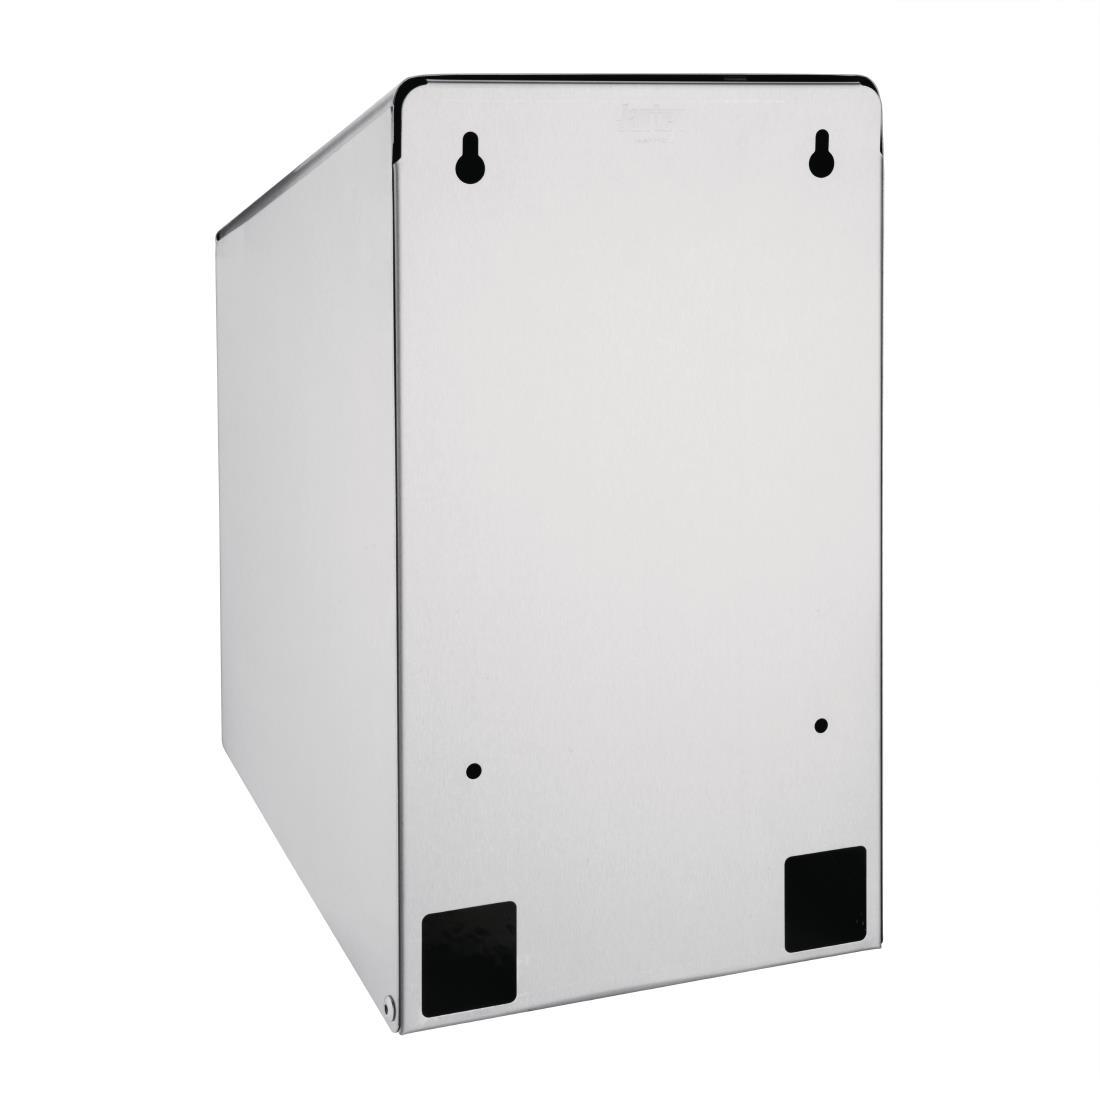 Jantex Stainless Steel Centrefeed Roll Dispenser - GJ030  - 3